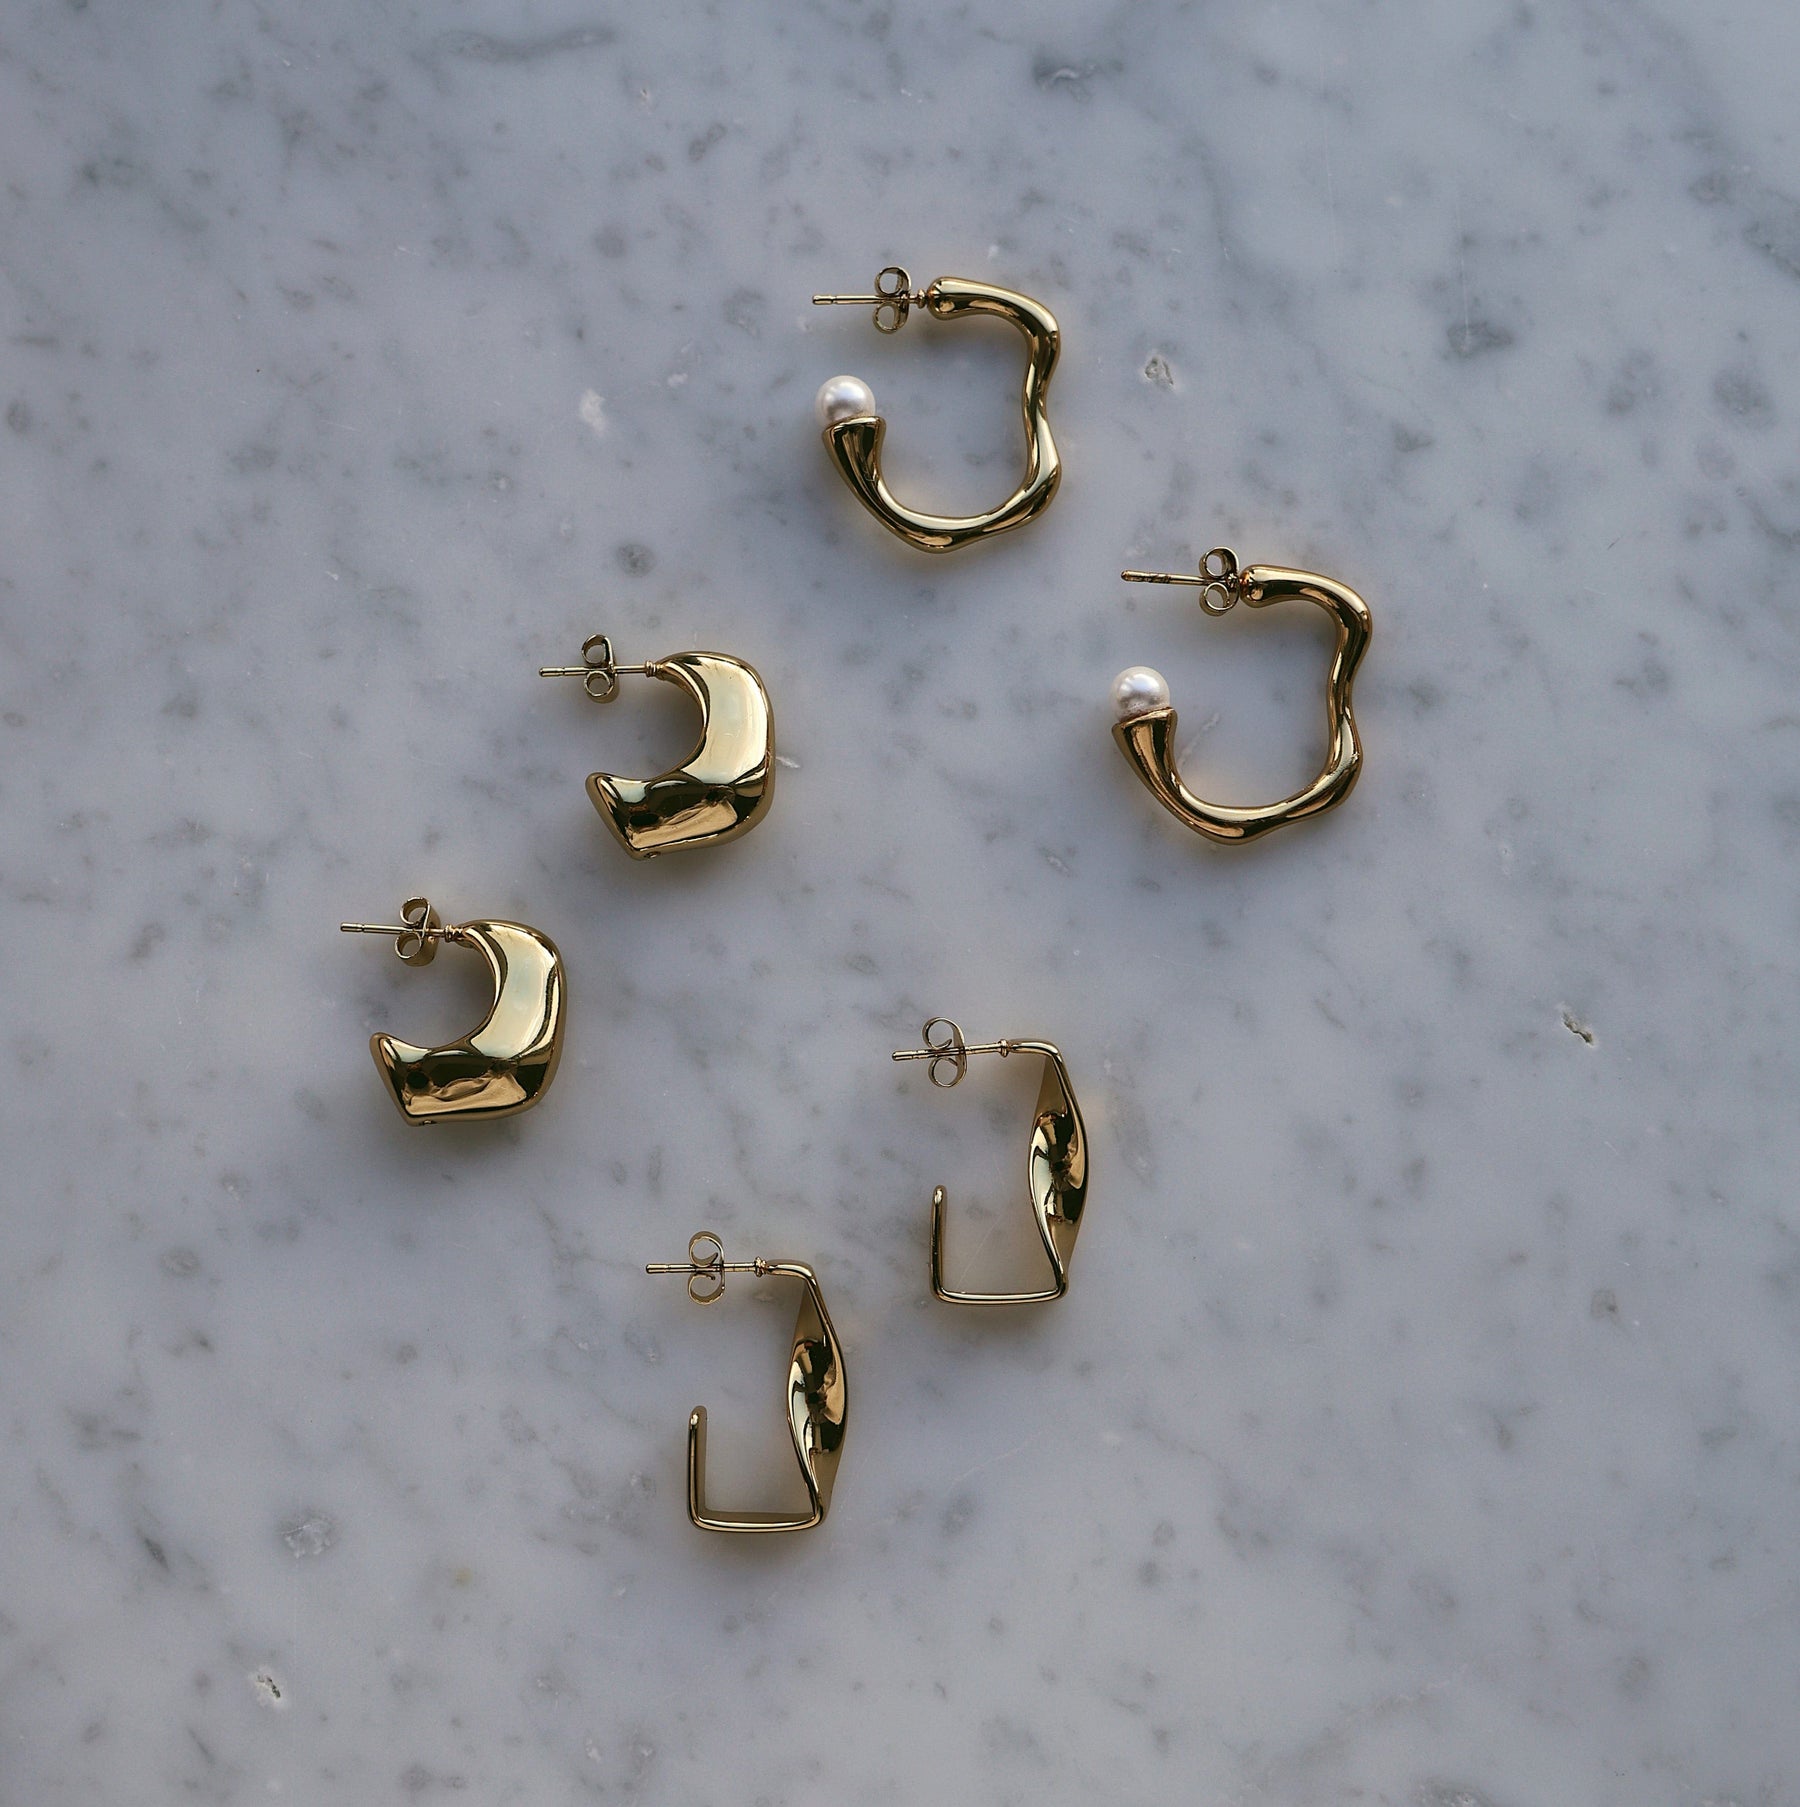 BOHOMOON Stainless Steel Spiral Hoop Earrings Gold